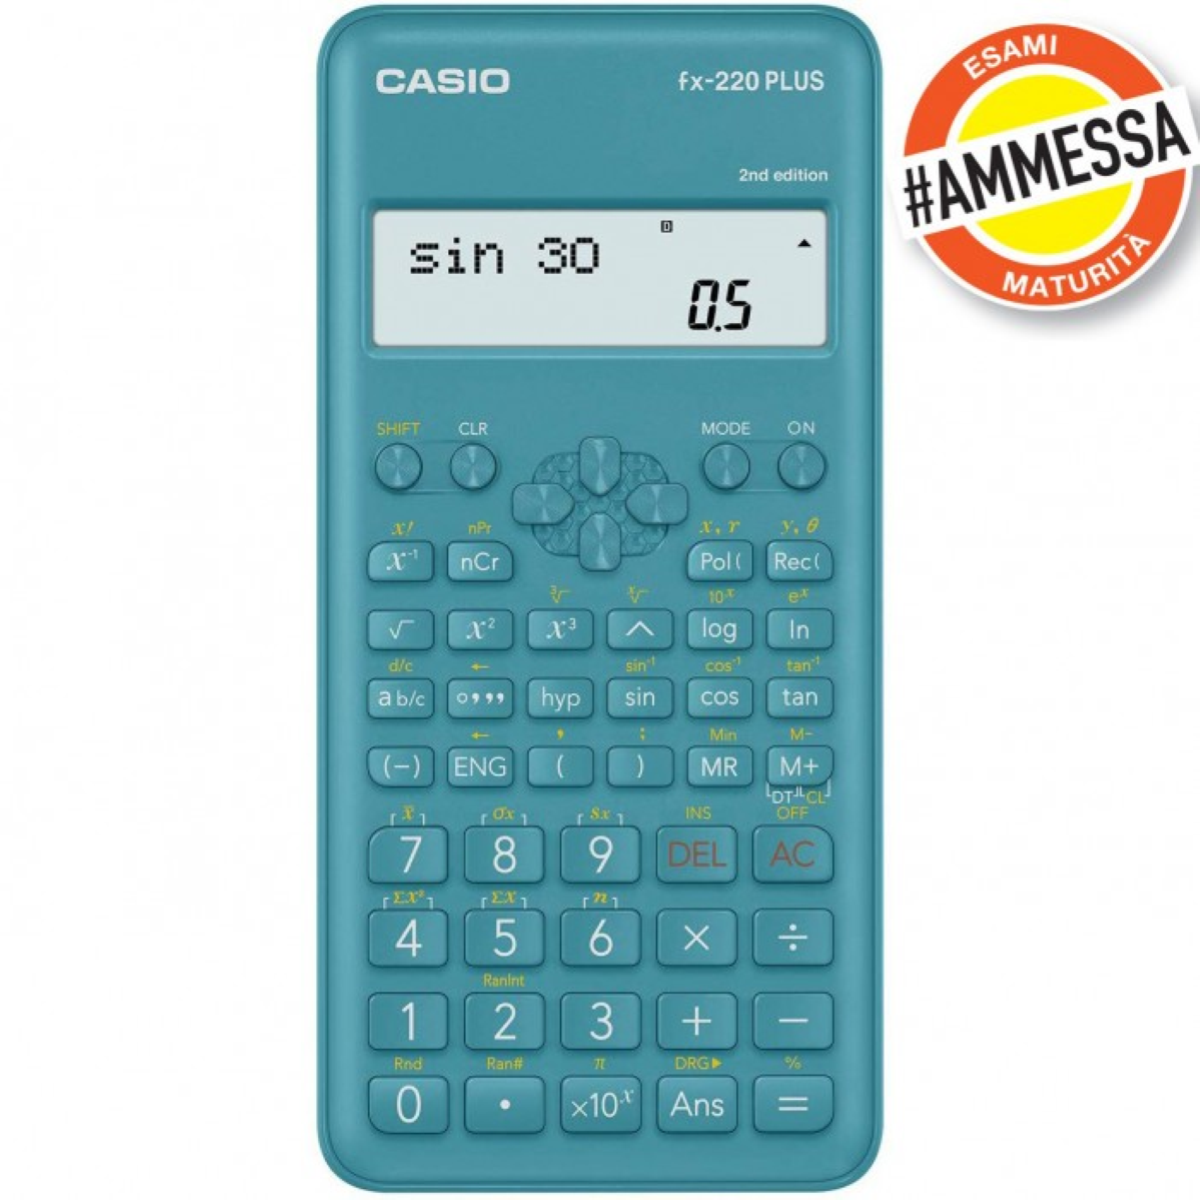 Calcolatrice Casio Scientifica FX-220PLUS 2nd Edition - 181 Funzioni (Cod.  FX220PLUS)